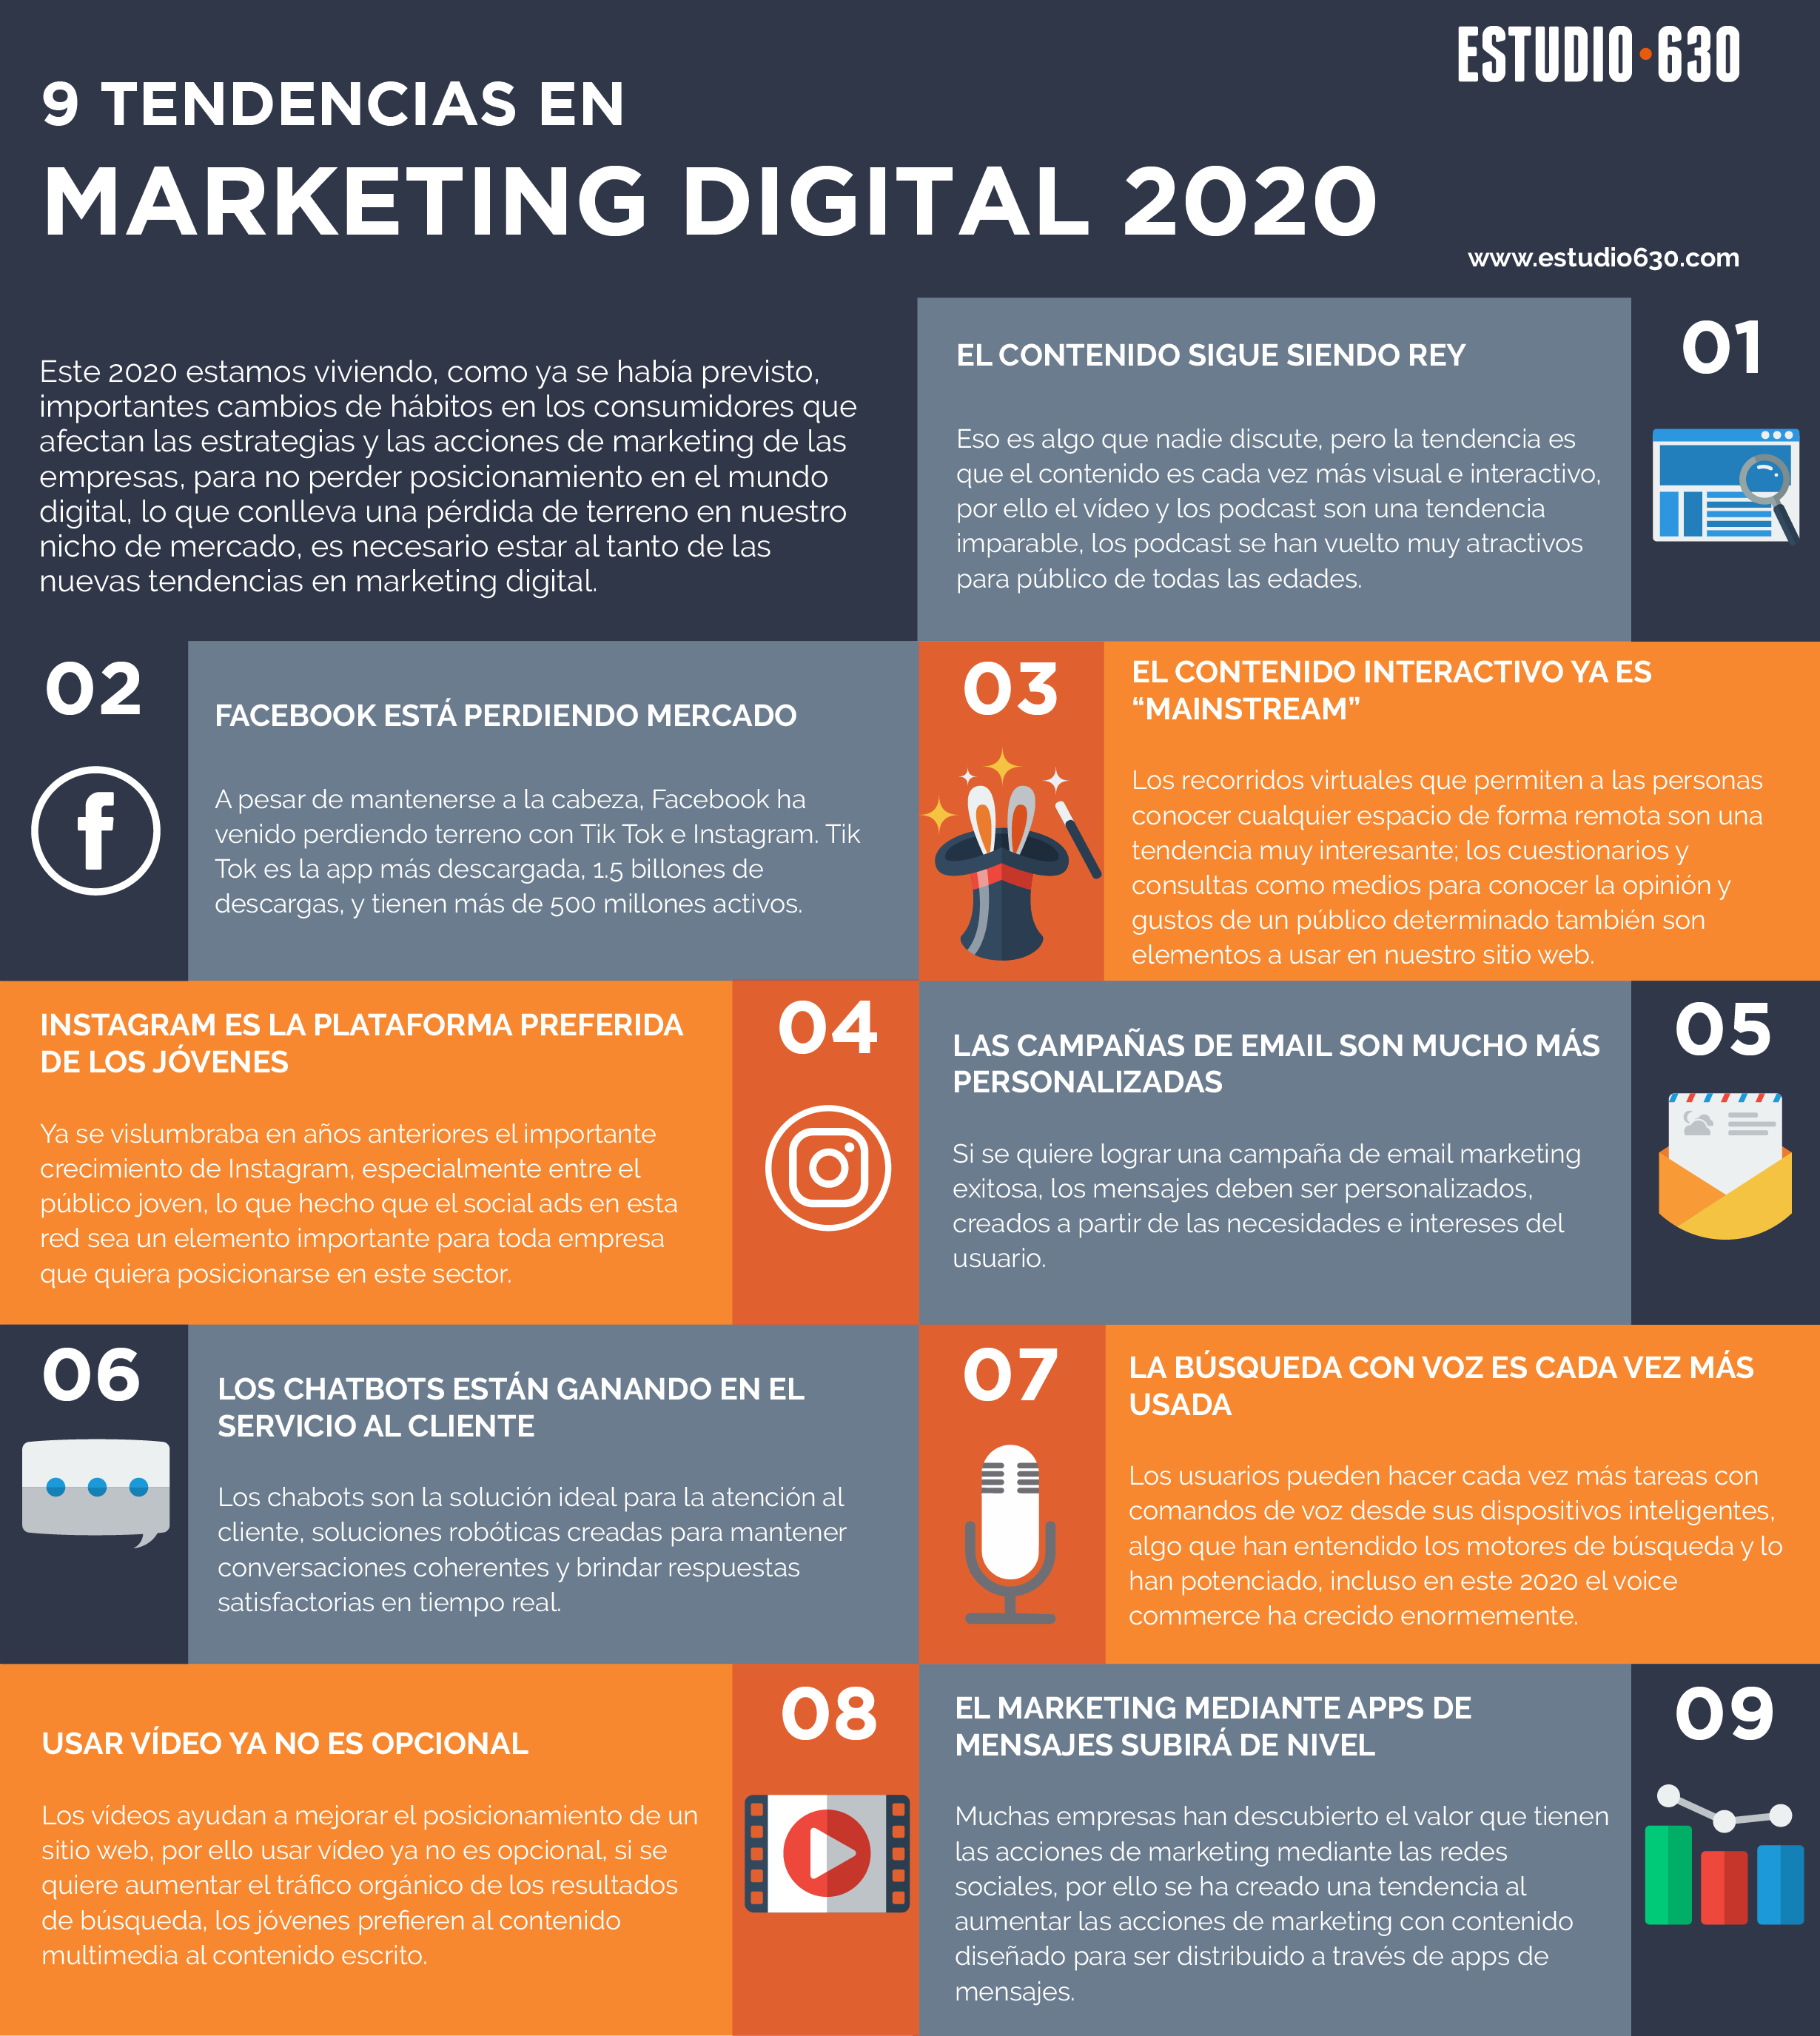 9 tendencias en Marketing Digital 2020 URGENTES (Infografía)